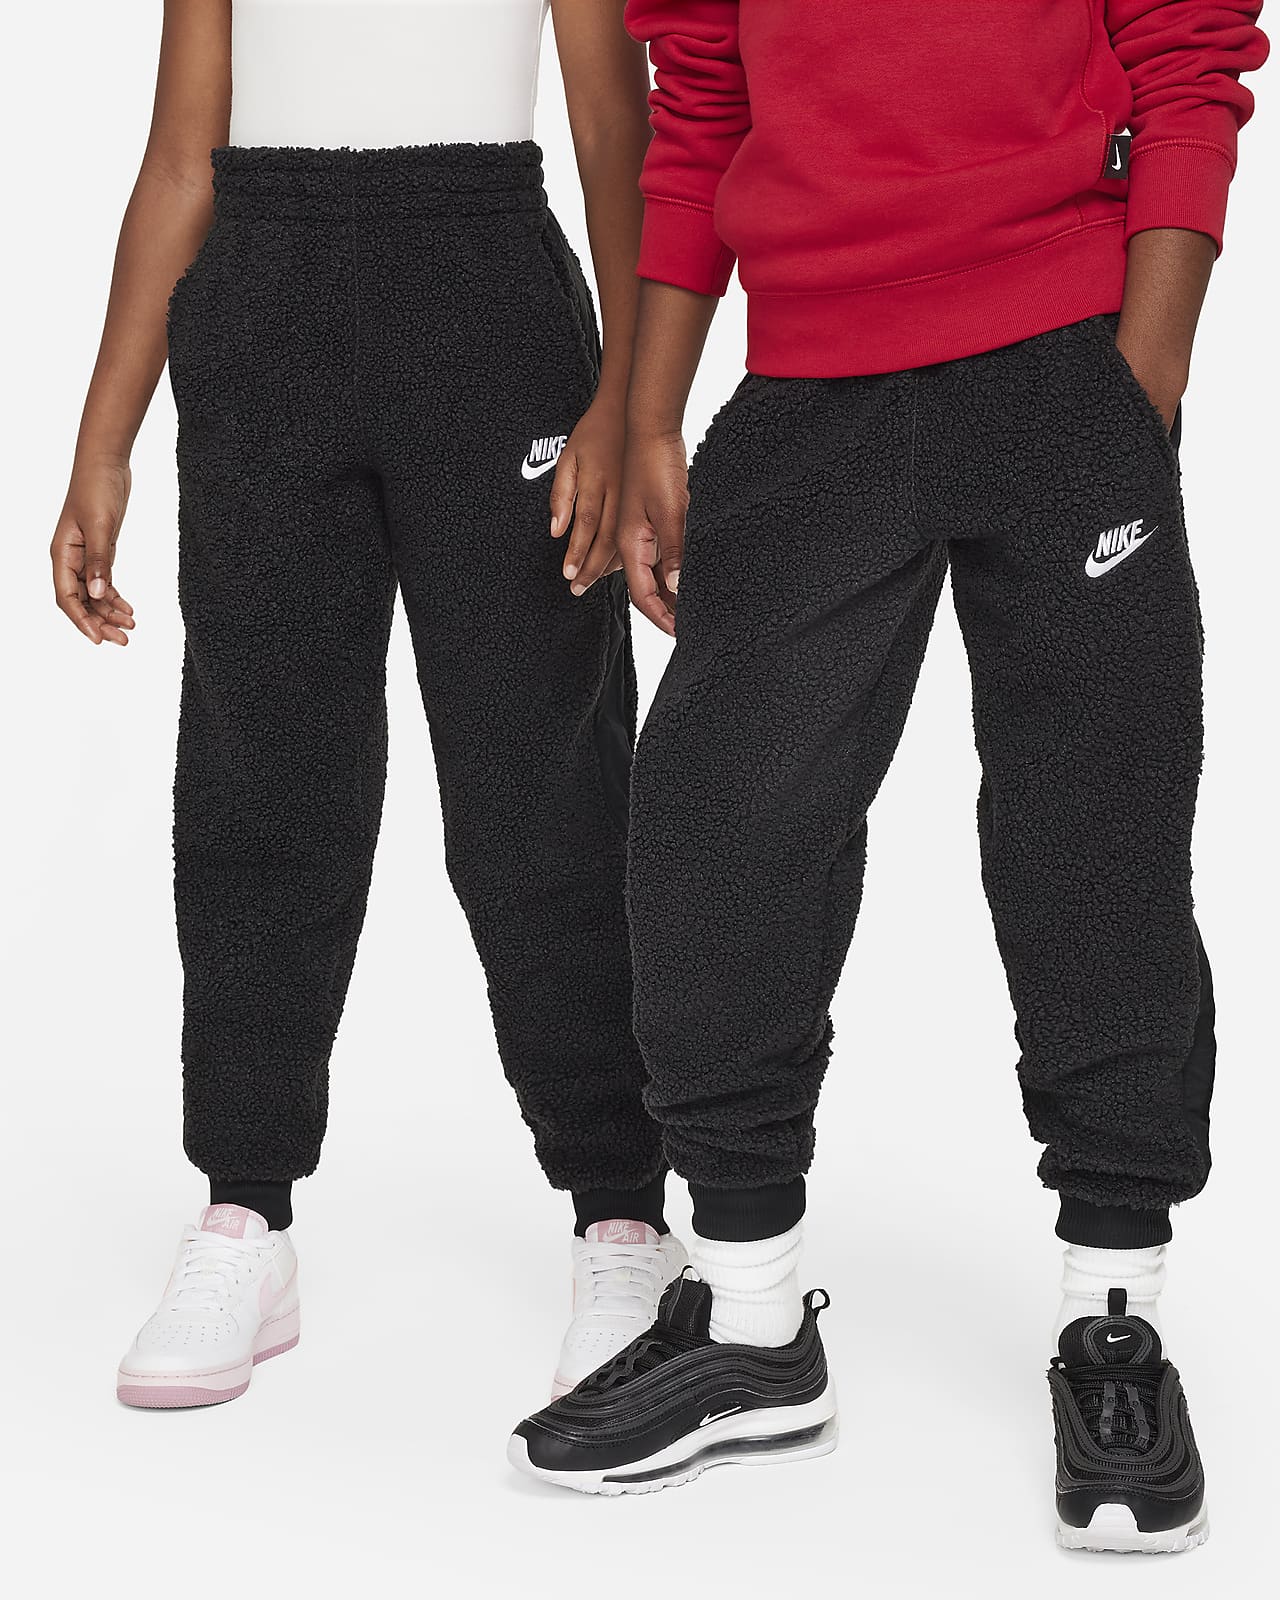 Nike Baggy Pants -  Canada